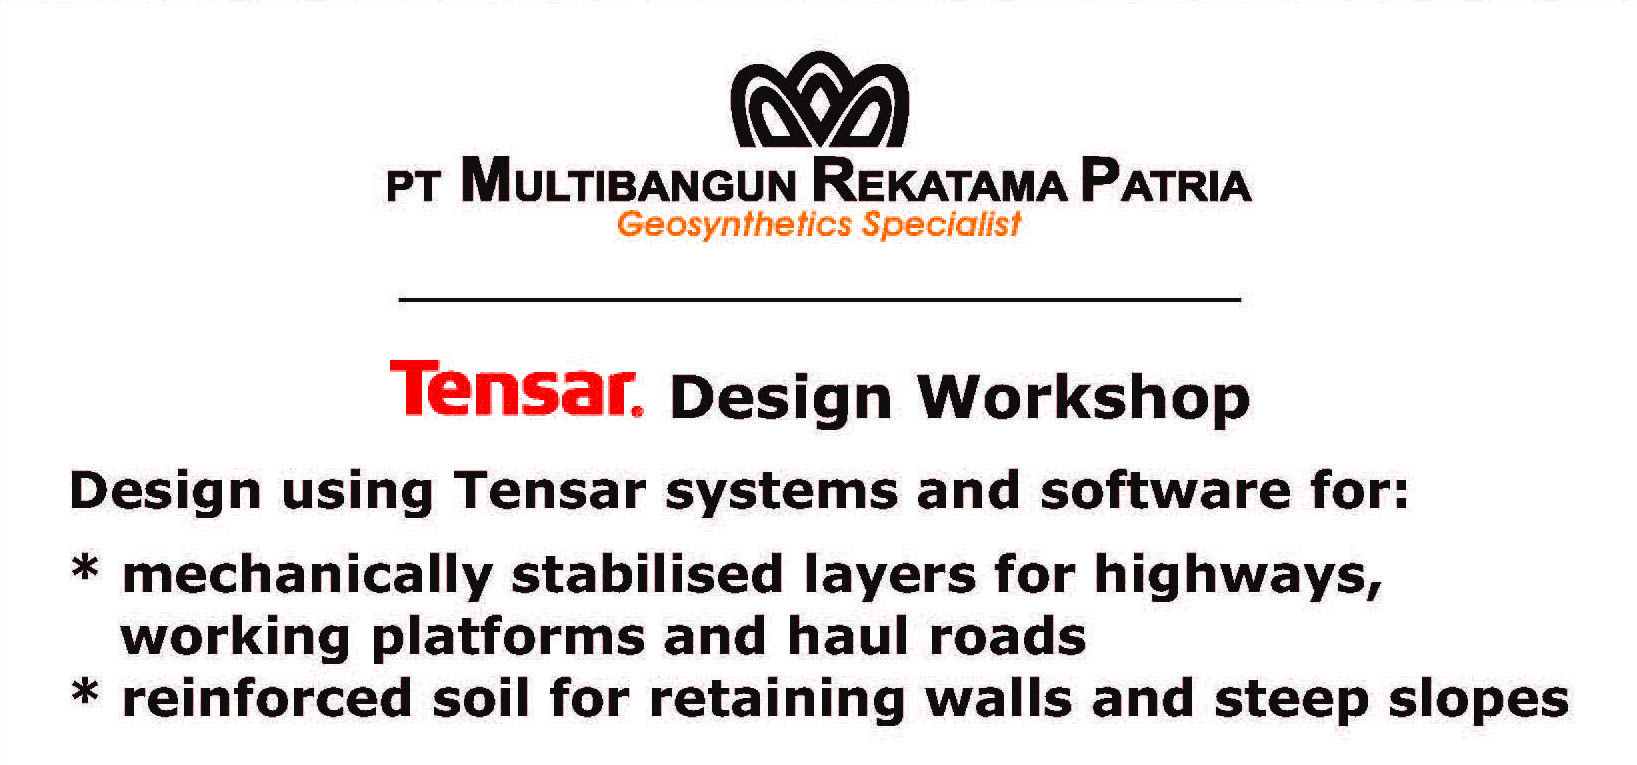 News : Ikuti Workshop Gratis !!! Tensar Design Workshop 9 April 2015 di Hotel Menara Peninsula 01